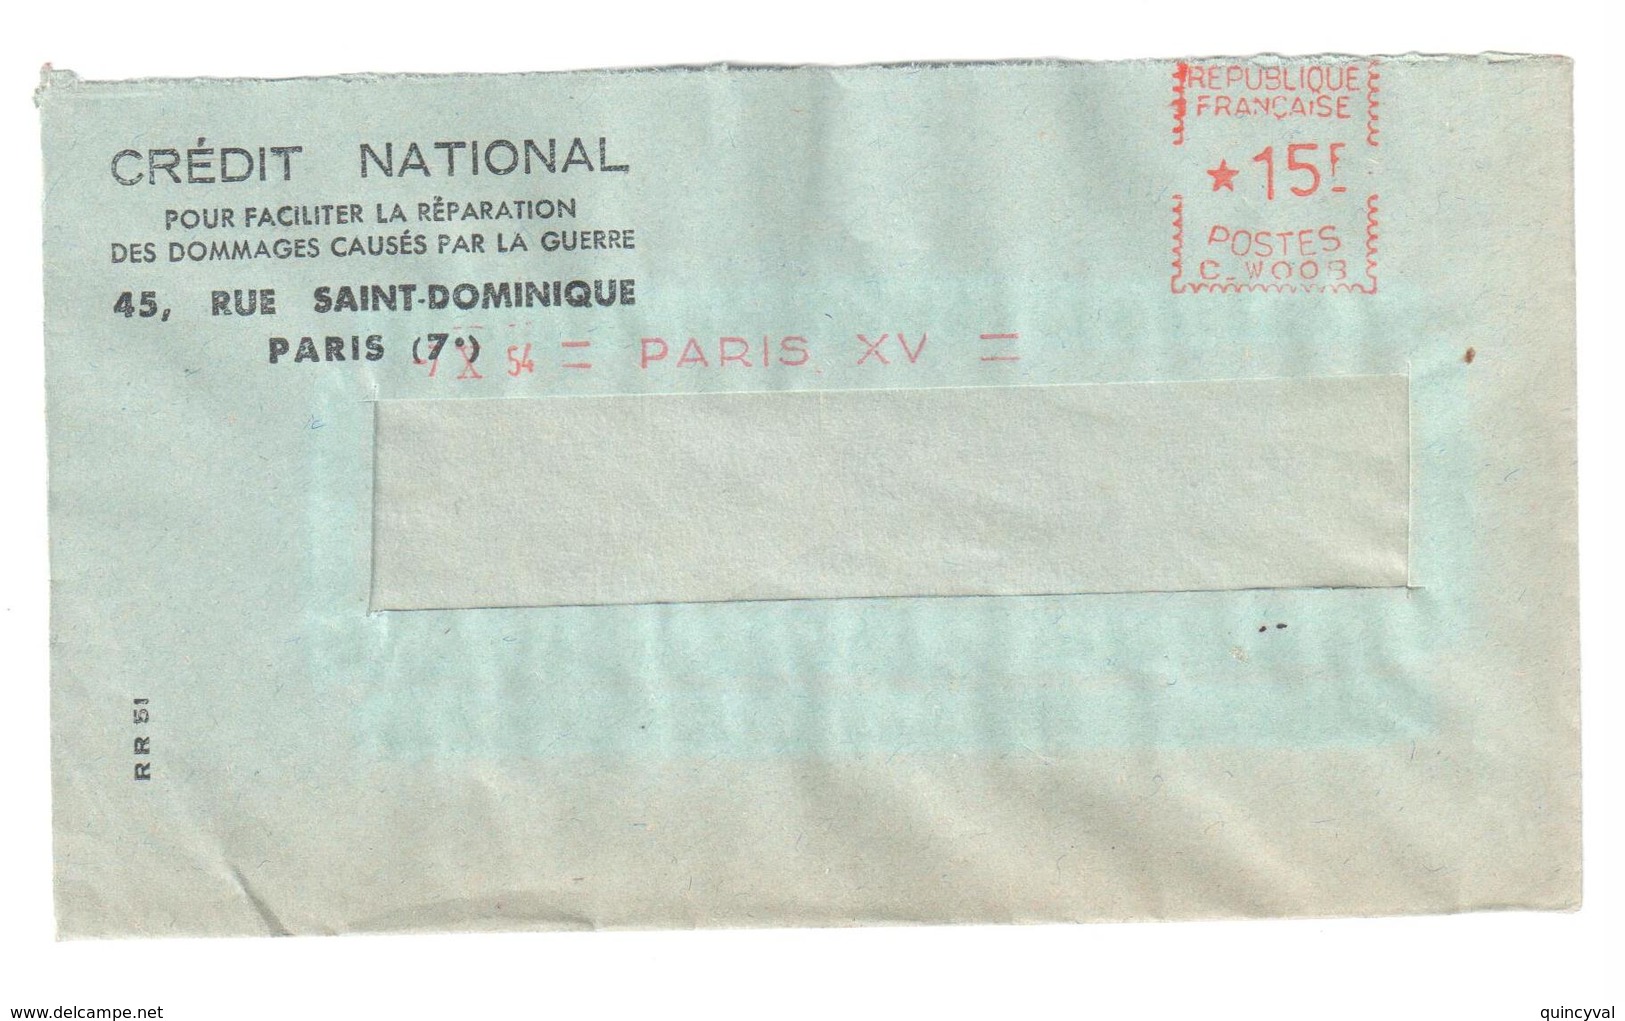 PARIS XV Lettre CREDIT NATIONAL Ob 7 10 1954 Lettre Simple EMA REMPLACEMENT C W 008 15 F - Freistempel